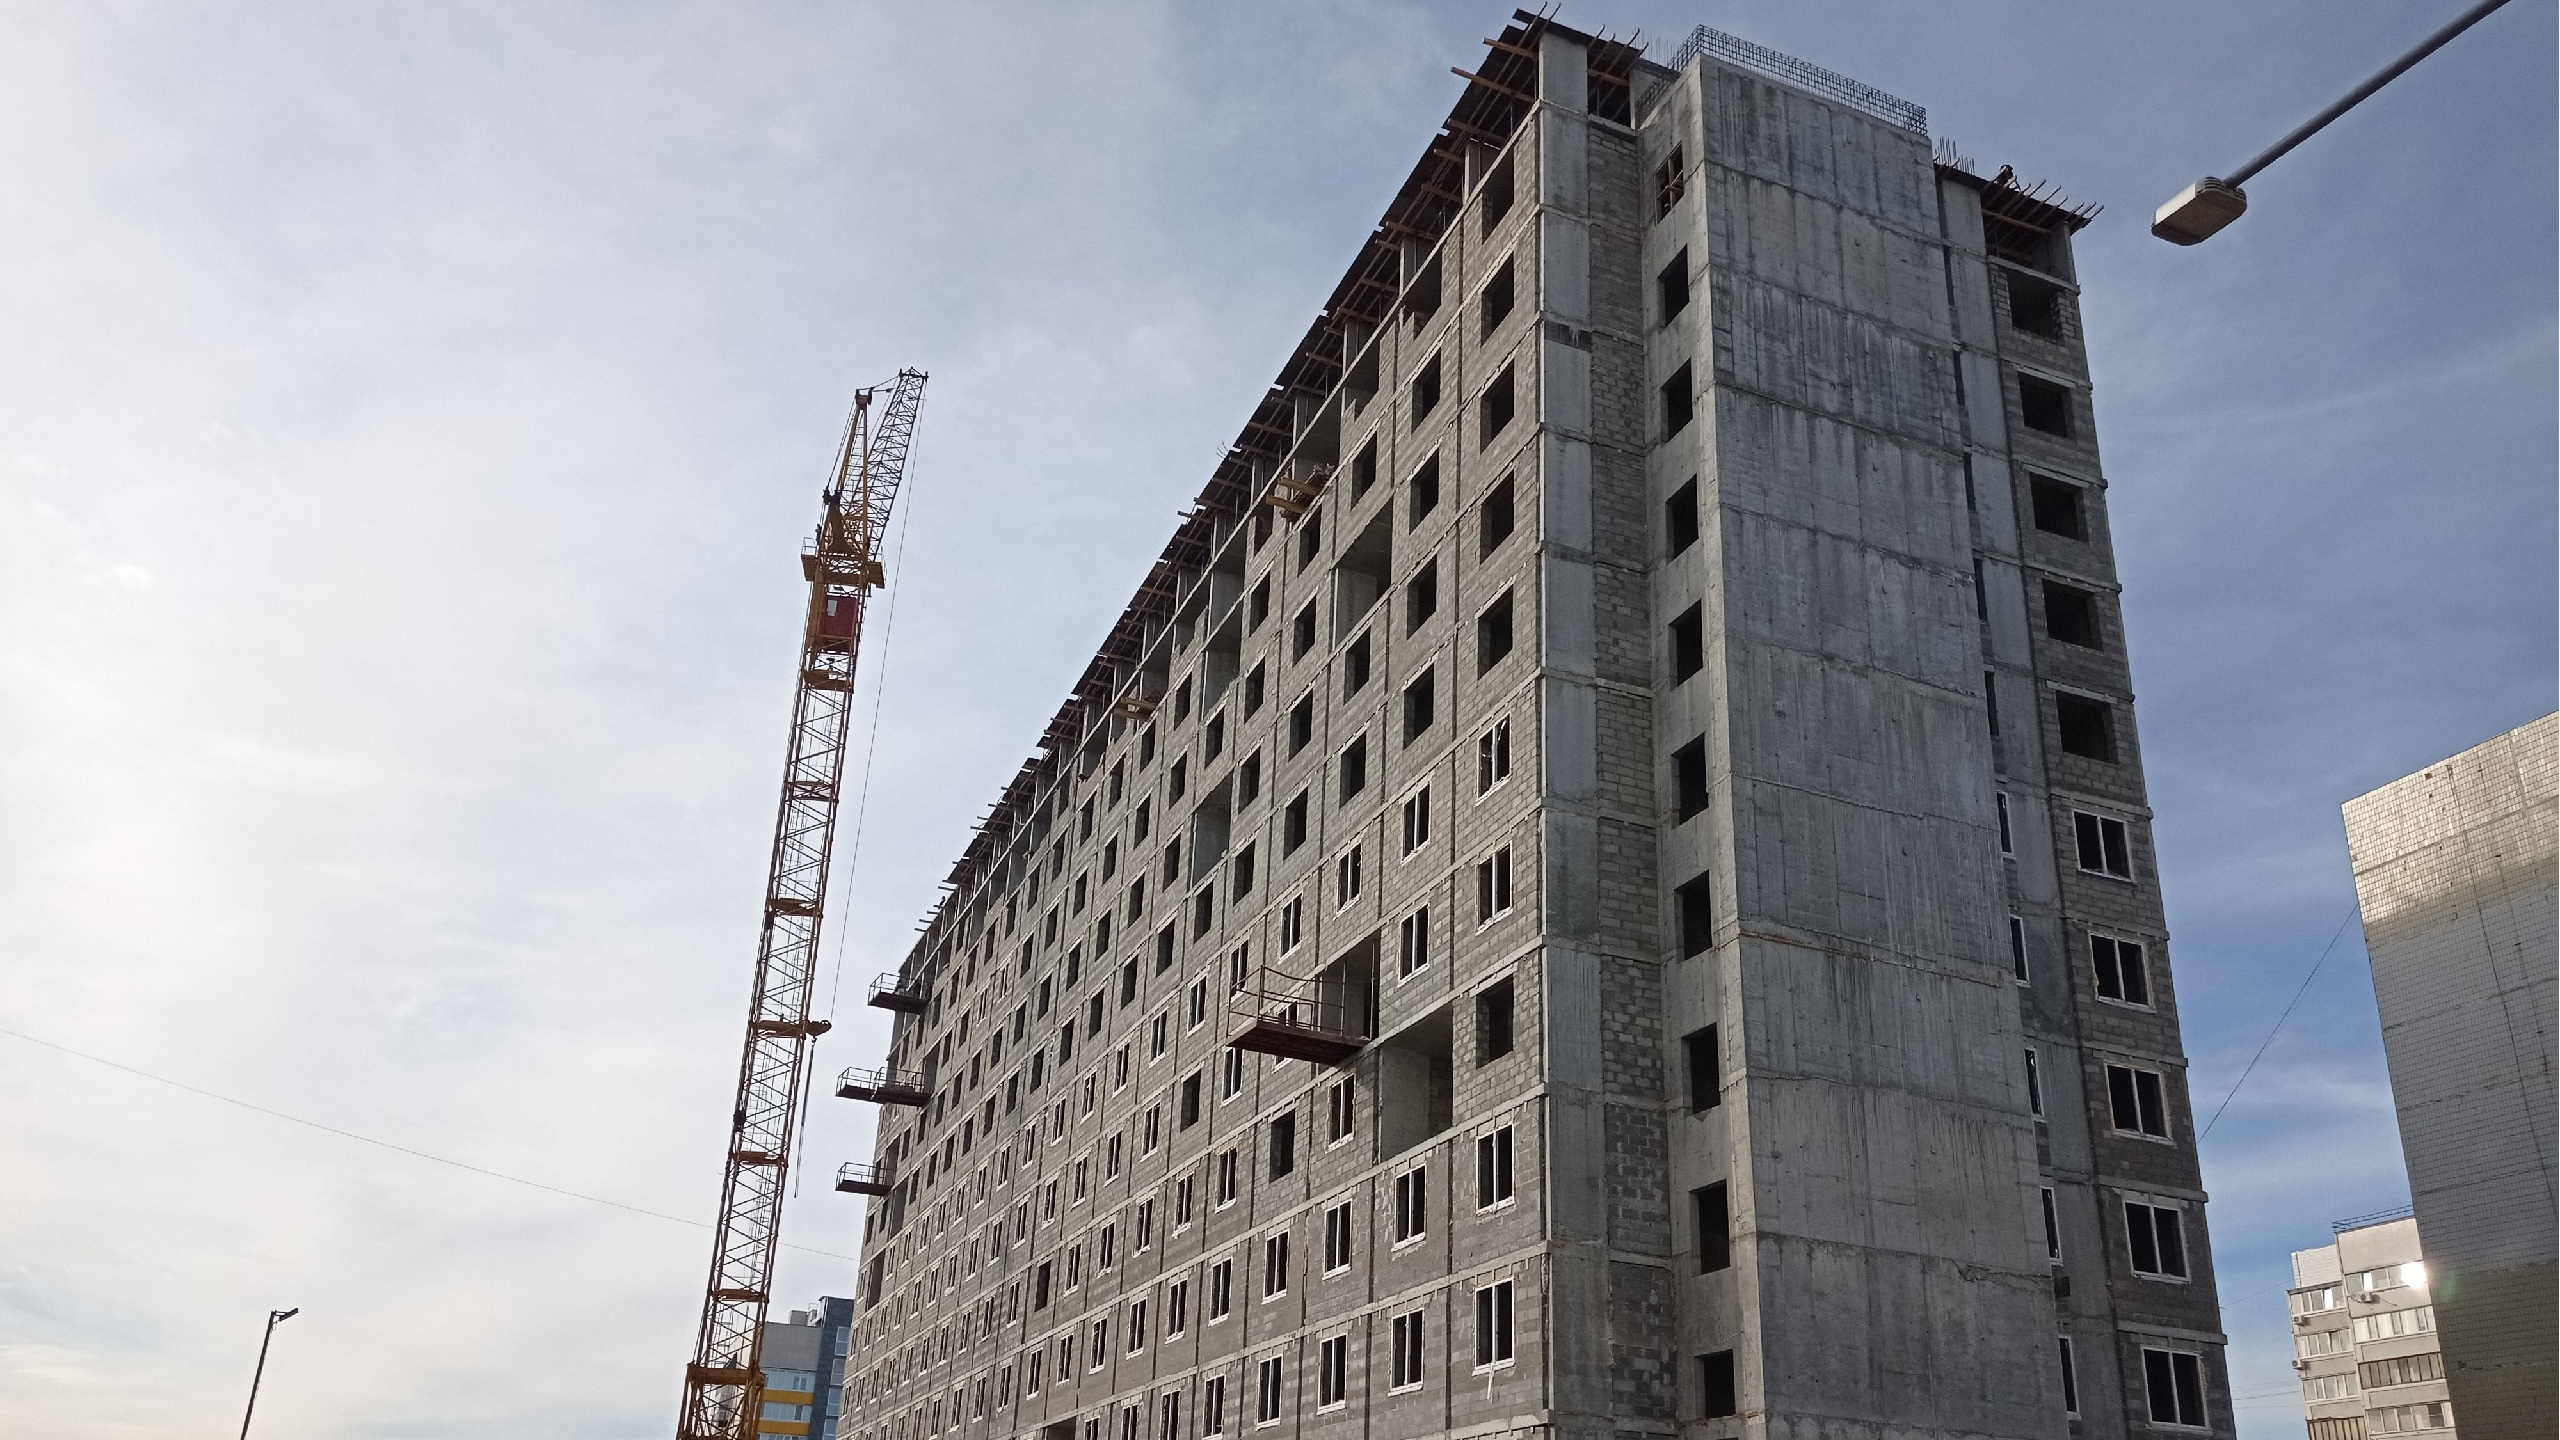 Ульяновская трудовая инспекция назвала причину смертельного падения рабочего с 8 этажа 